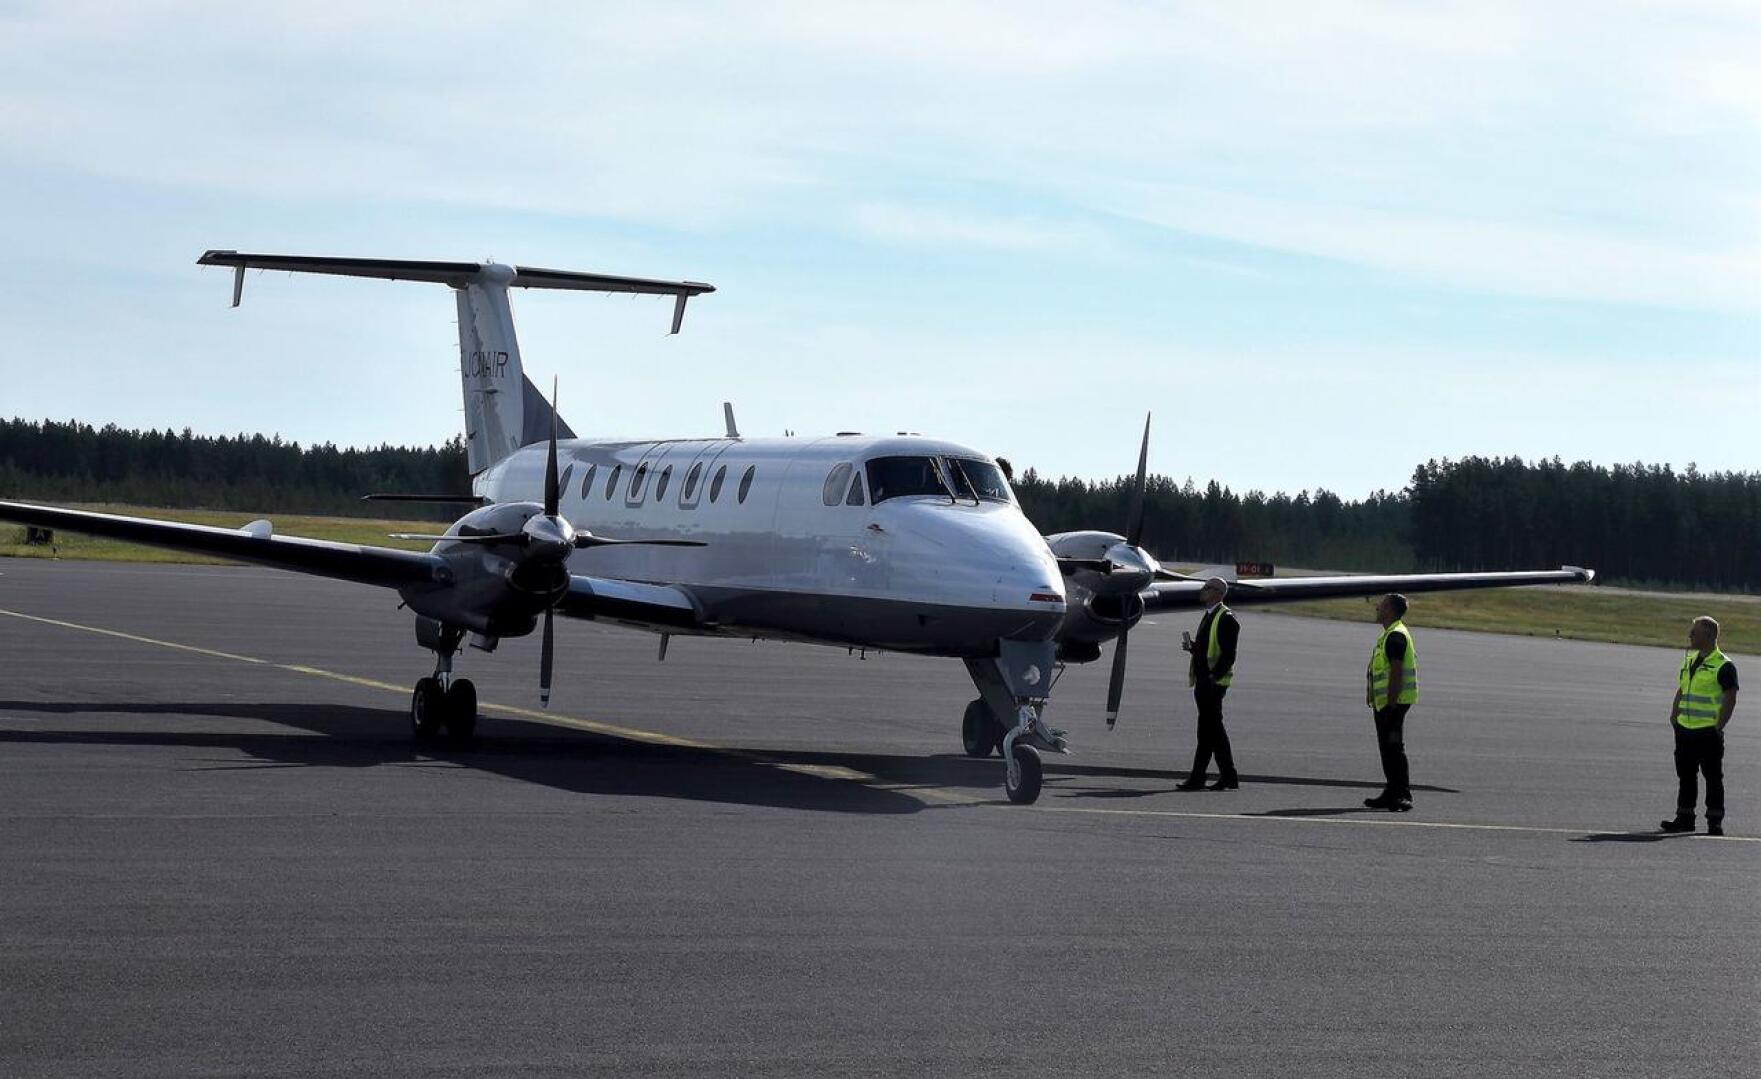 Ensimmäinen Jonairin lentokone laskeutui Kruunupyyn 18. elokuuta. Tuolloin reitillä ei olle lainkaan matkustajia.